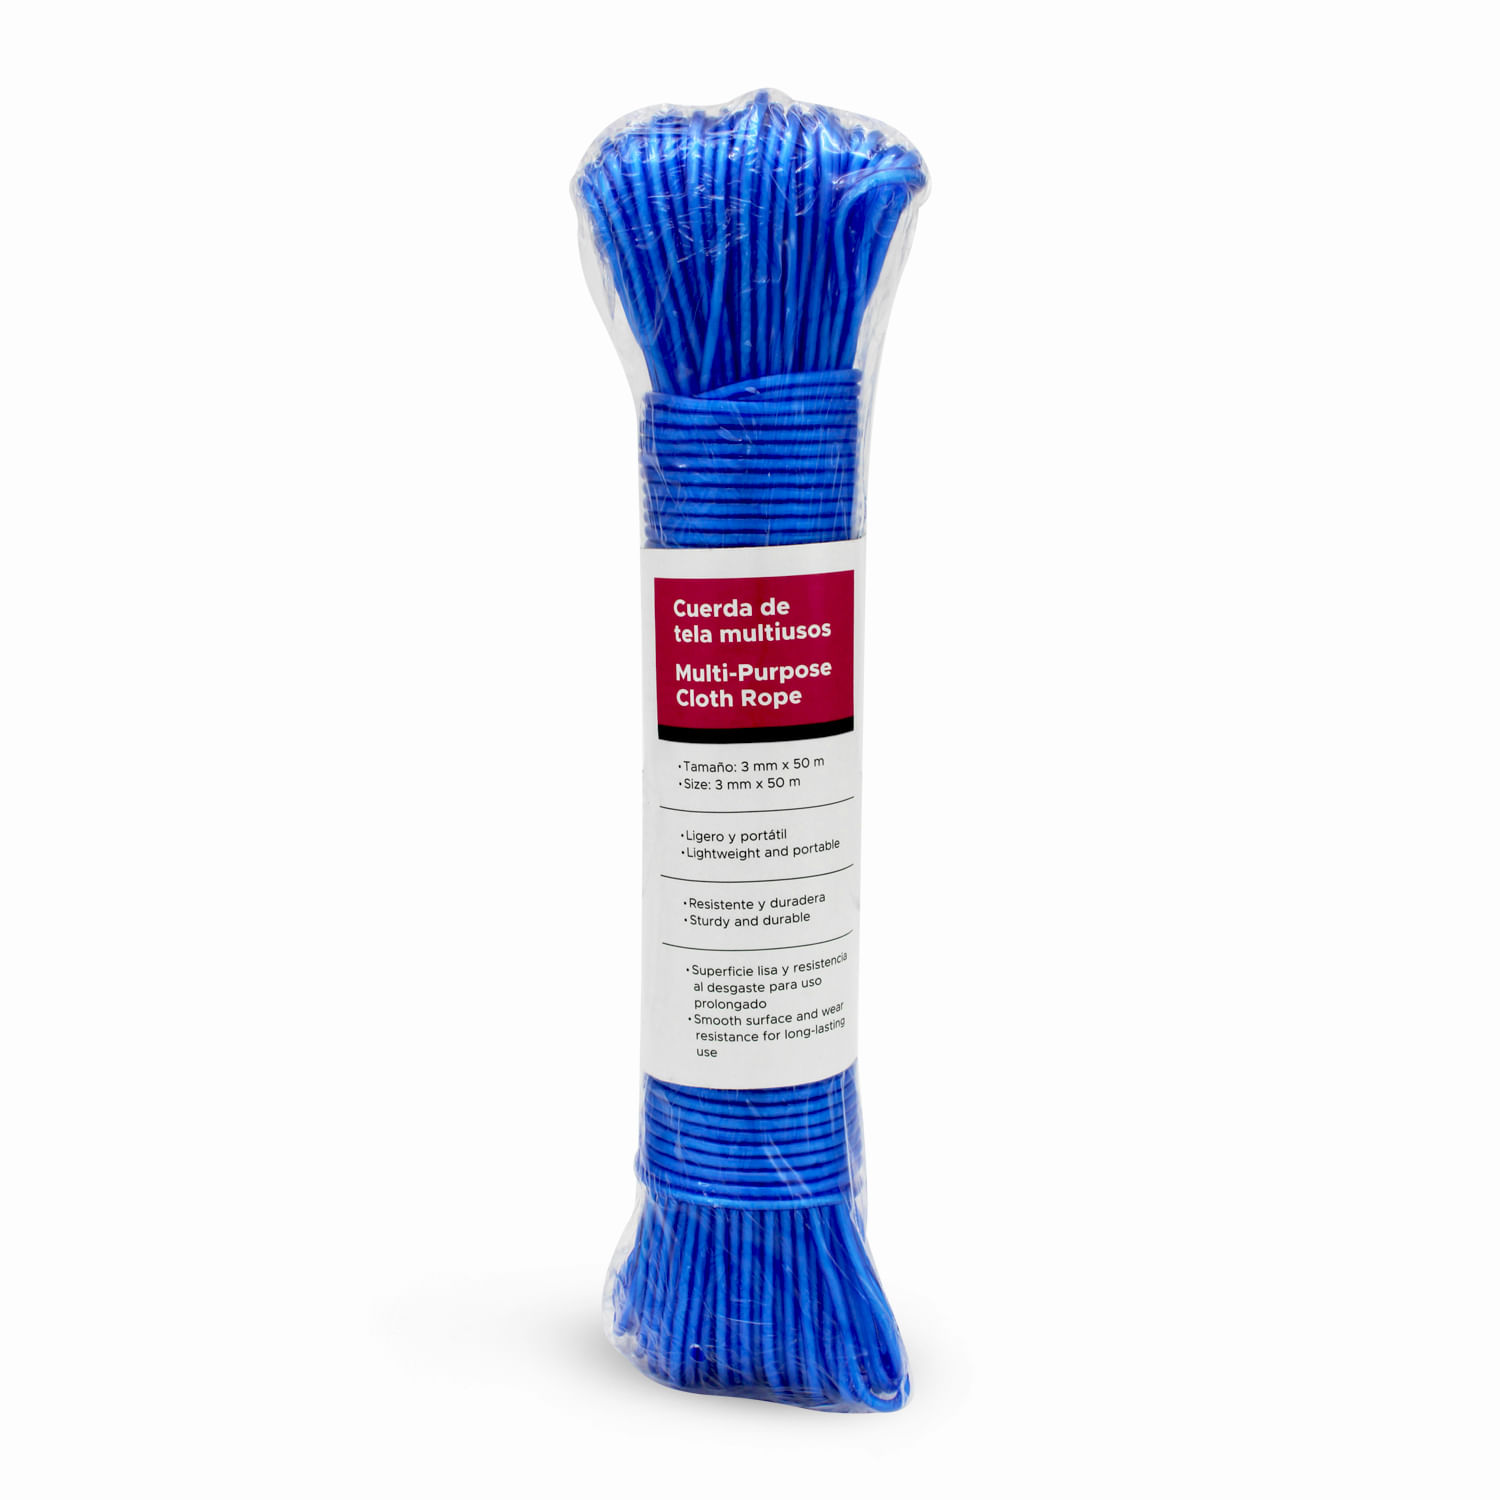 24pcs colorido plástico ropa clavija clip cuerda colgante tendedero a  prueba de viento